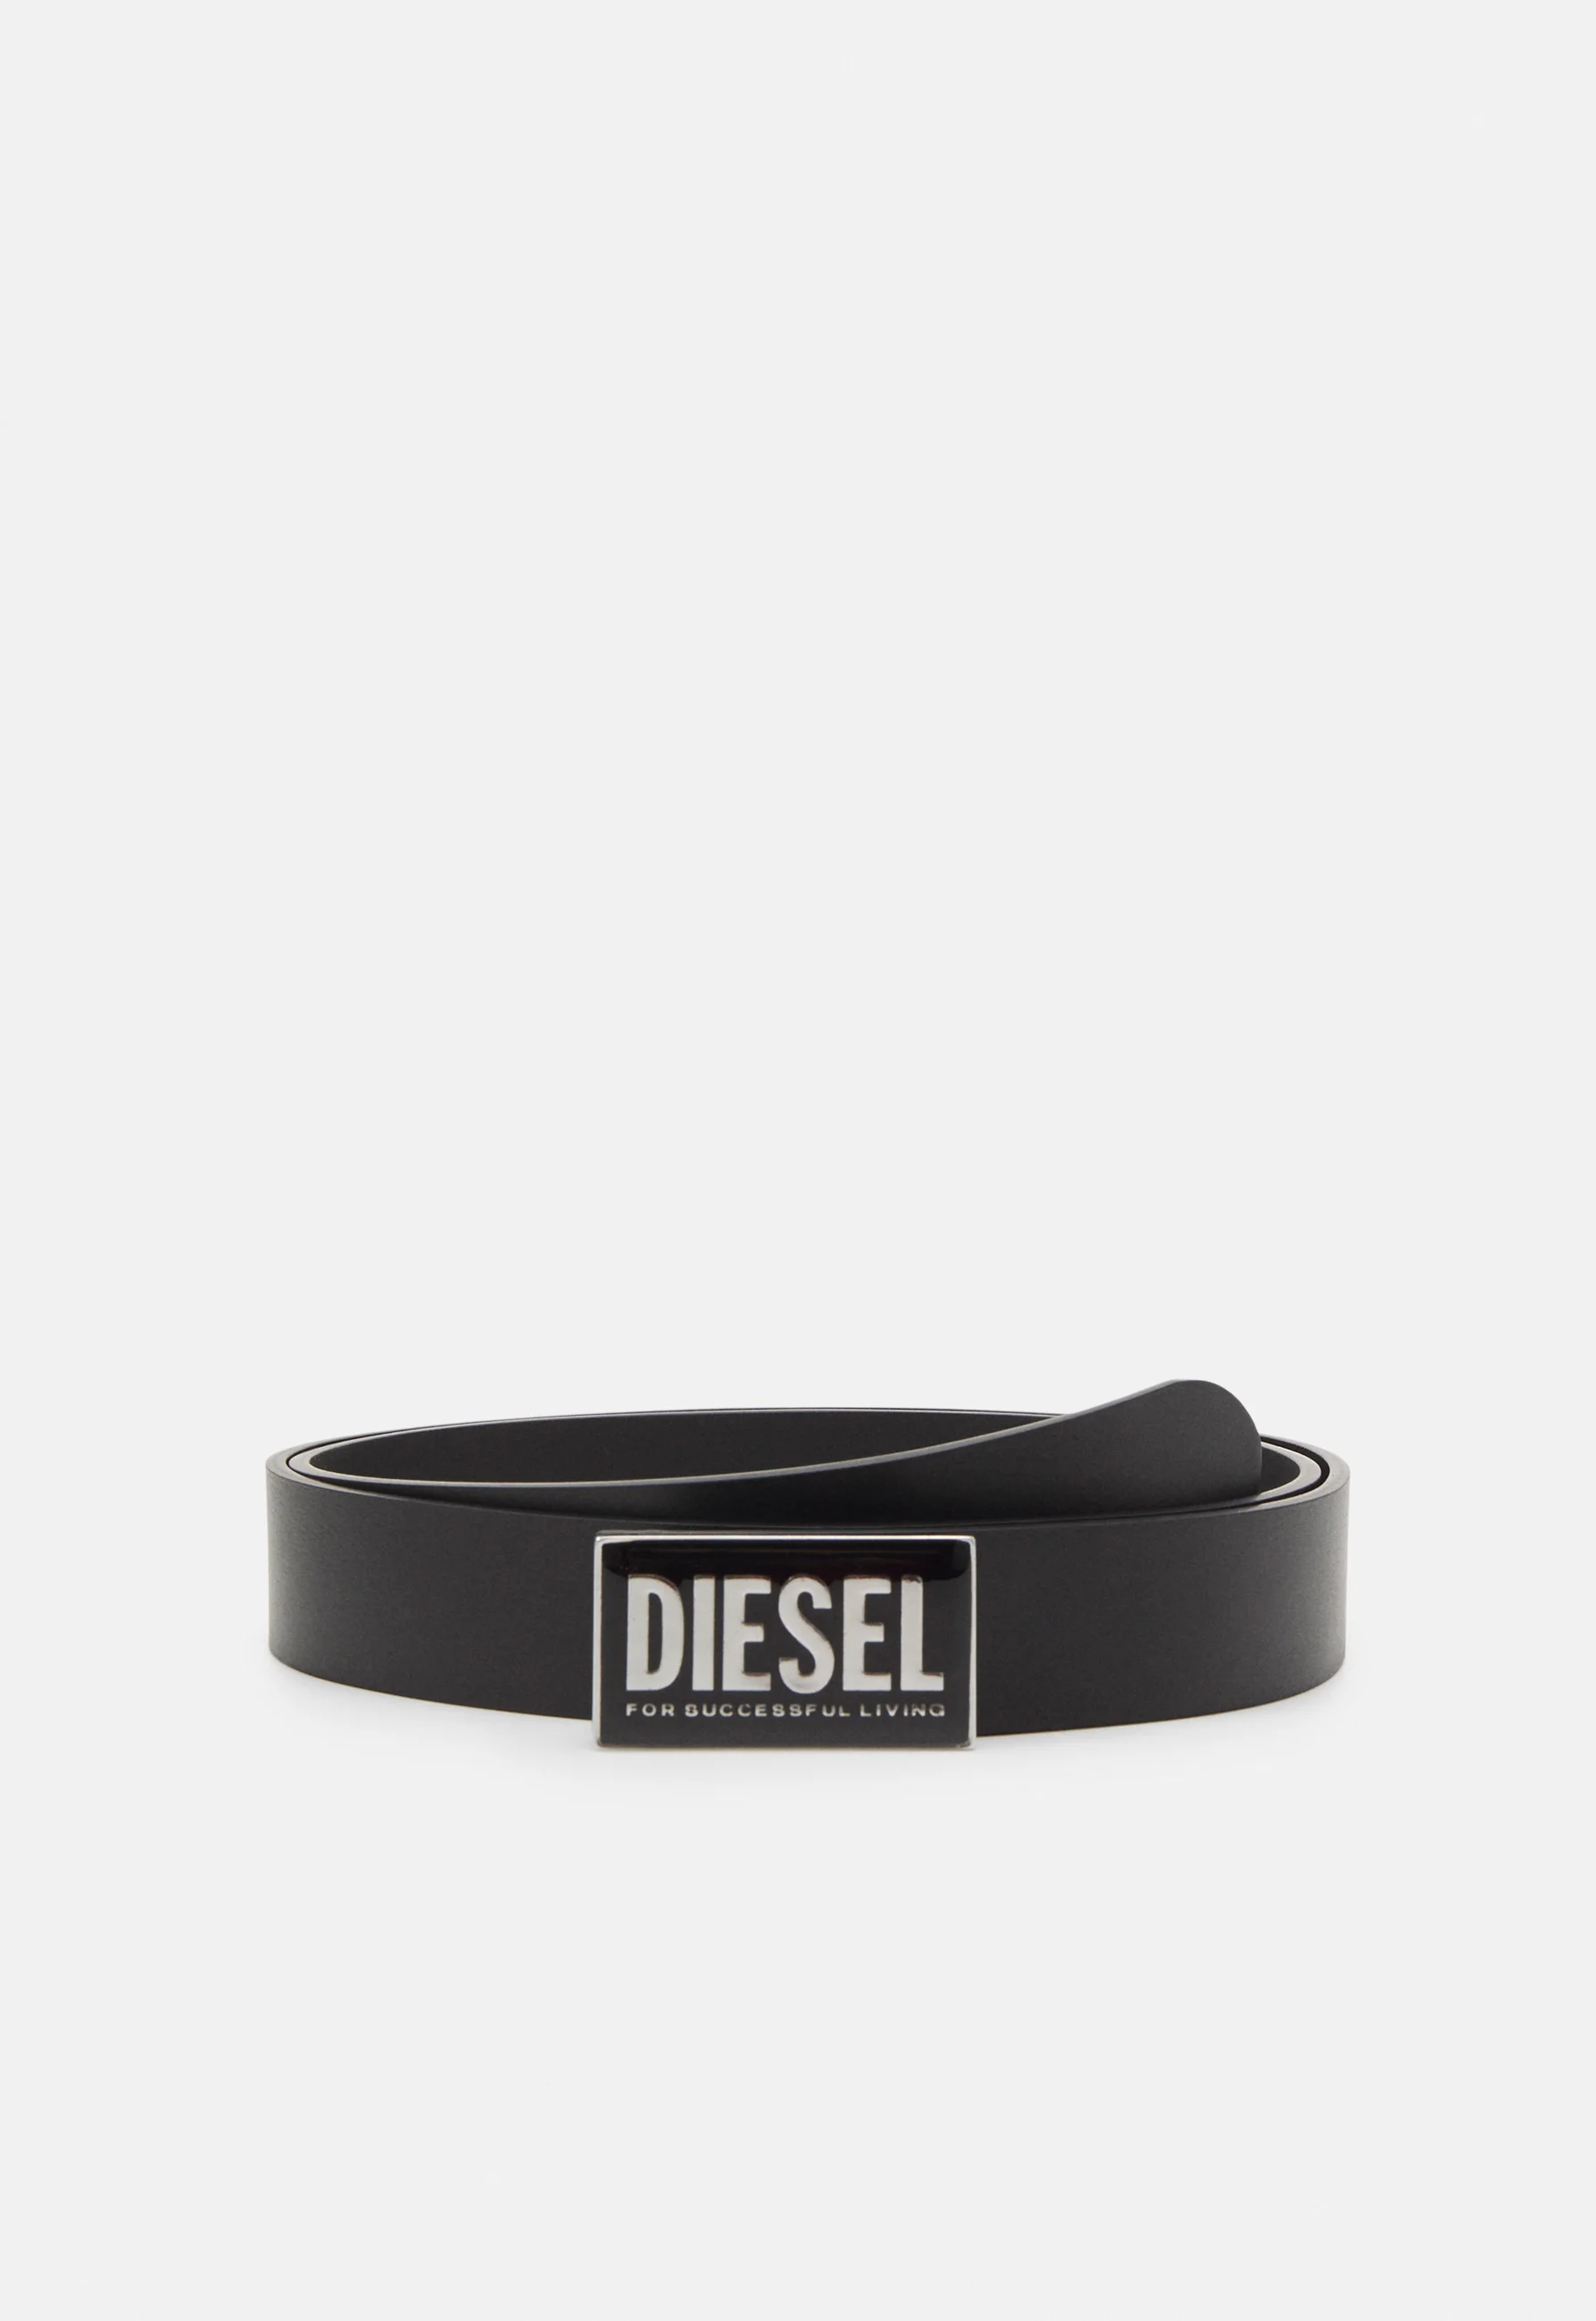 Diesel (12)